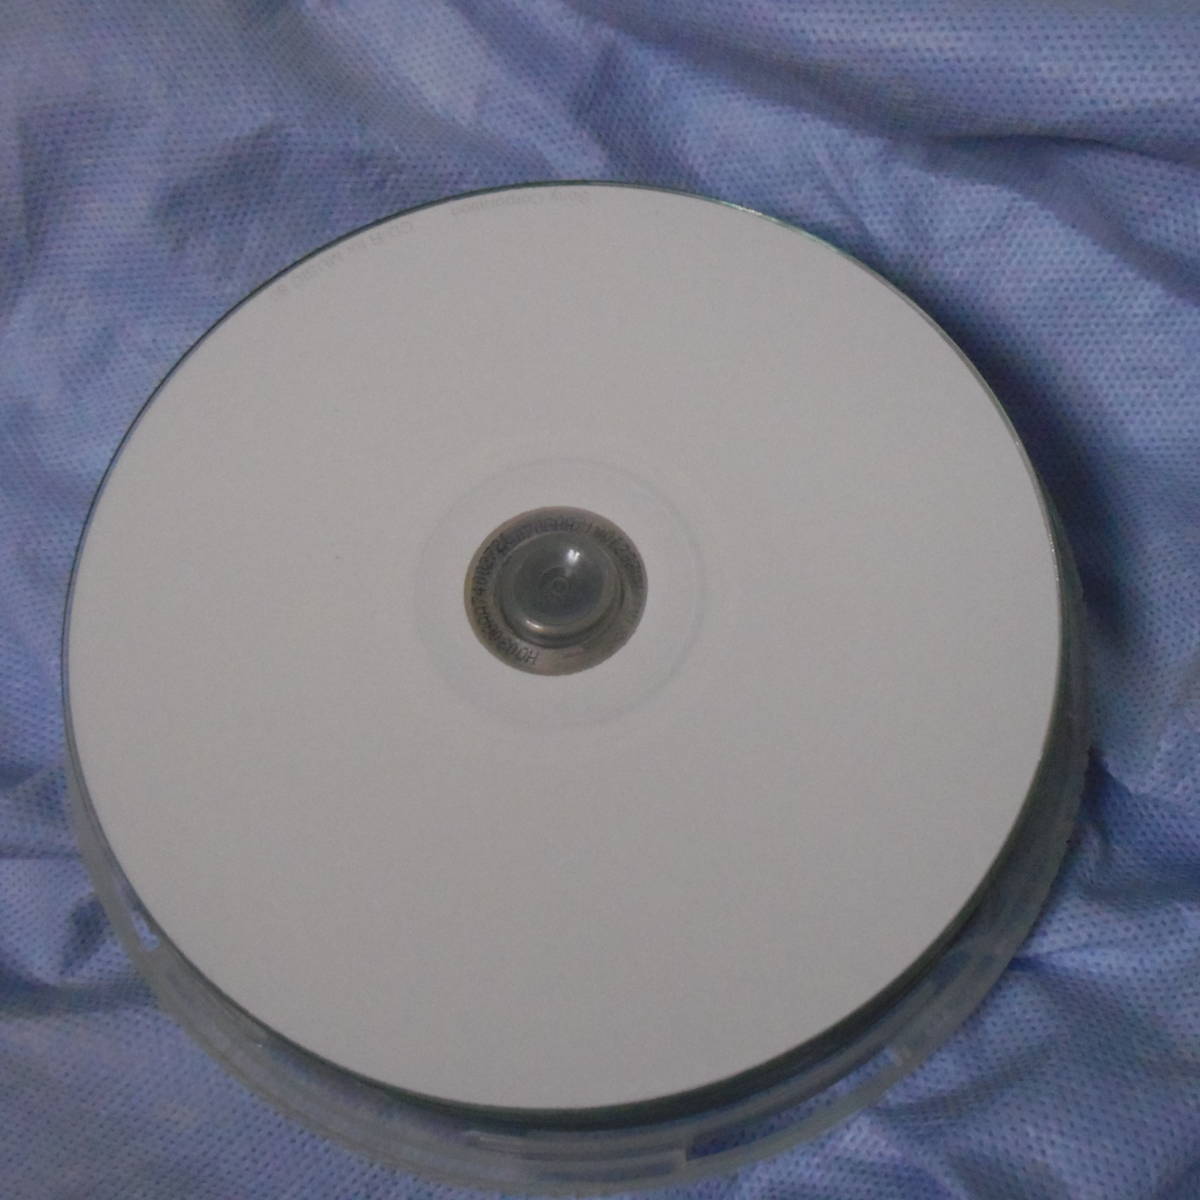 ノーブランド プリンタブル CD-R 700MB 80min 50枚スピンドル×4 計200枚+不織布ケース 200枚セット ゆうパック日本全国送料無料_画像1